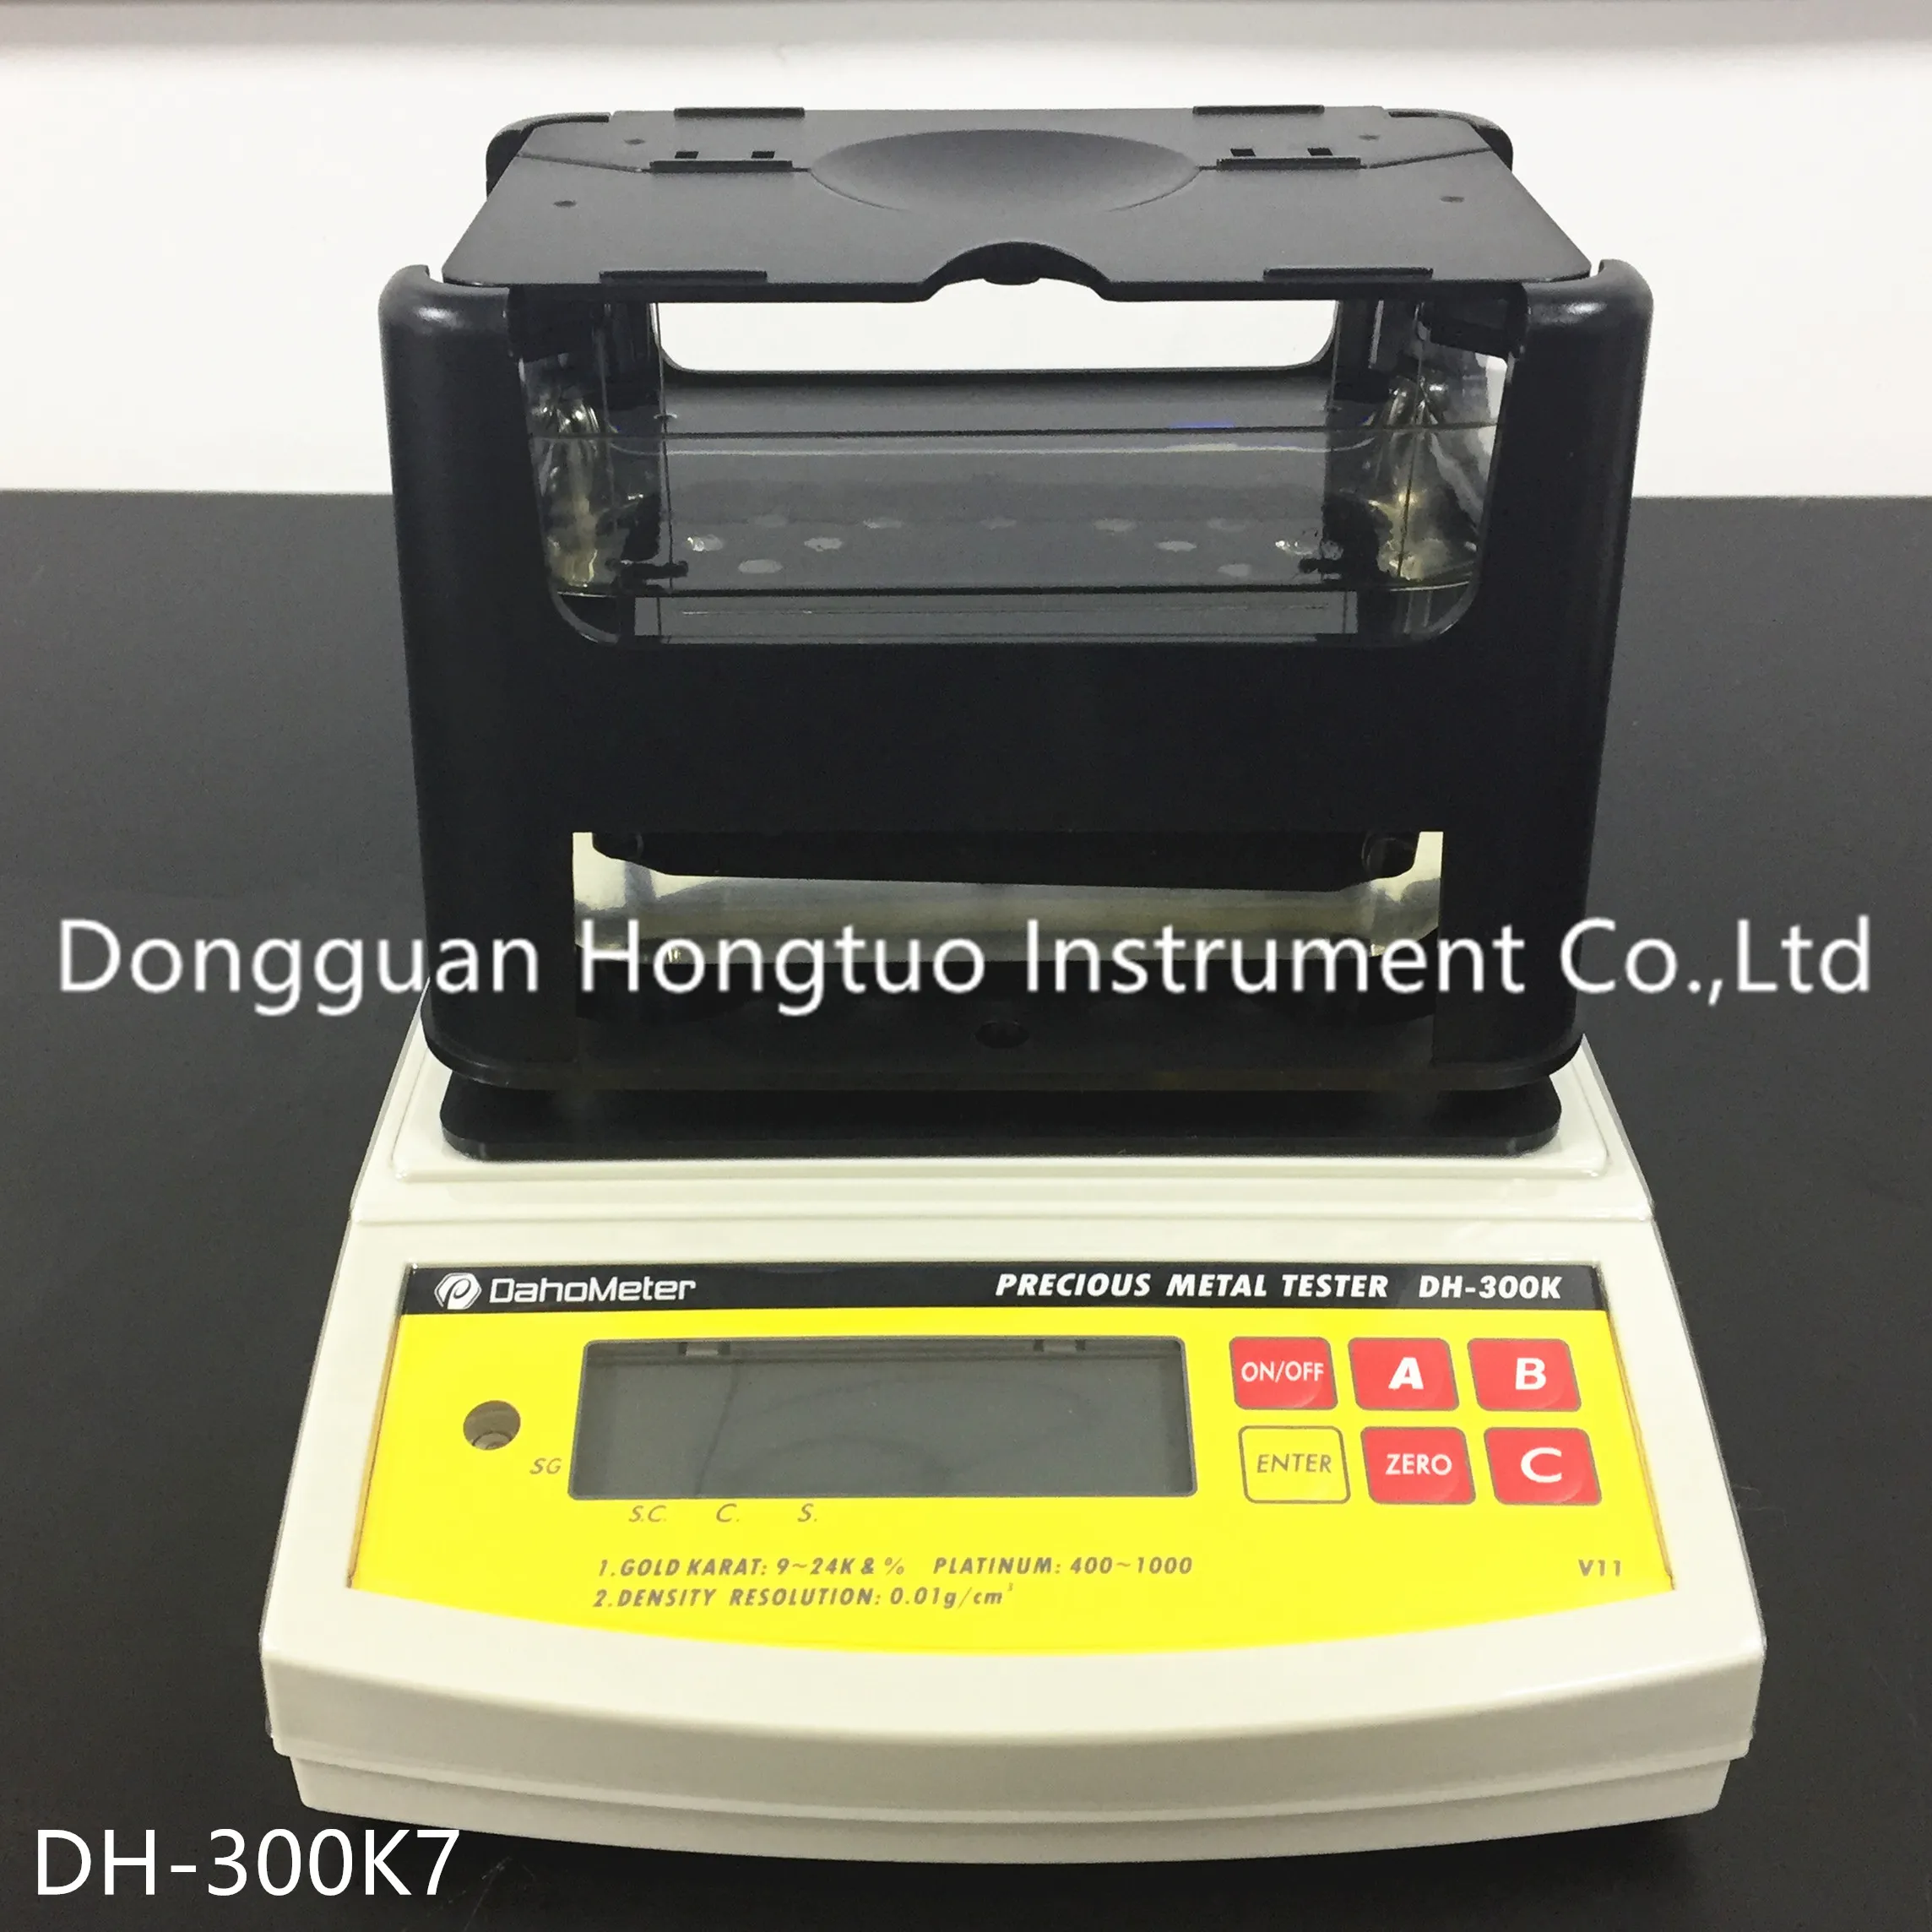 DH-300K DahoMeter 2 anni di garanzia Tester digitale elettronico popolare dell'oro, tester di carati dell'oro, apparecchiatura di collaudo dell'oro